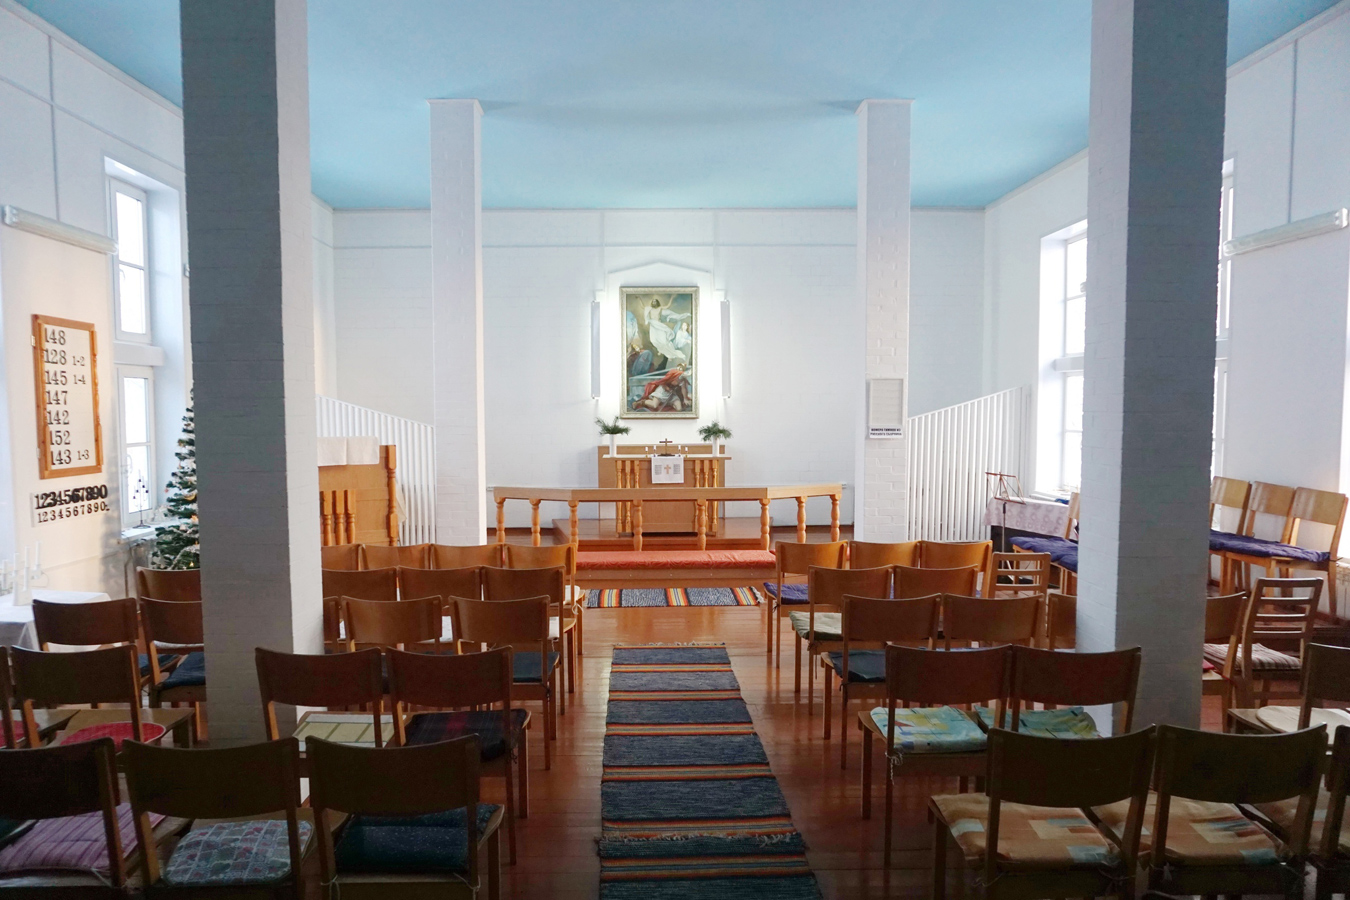 January 9, 2022. Lutheran church in Ruskeala